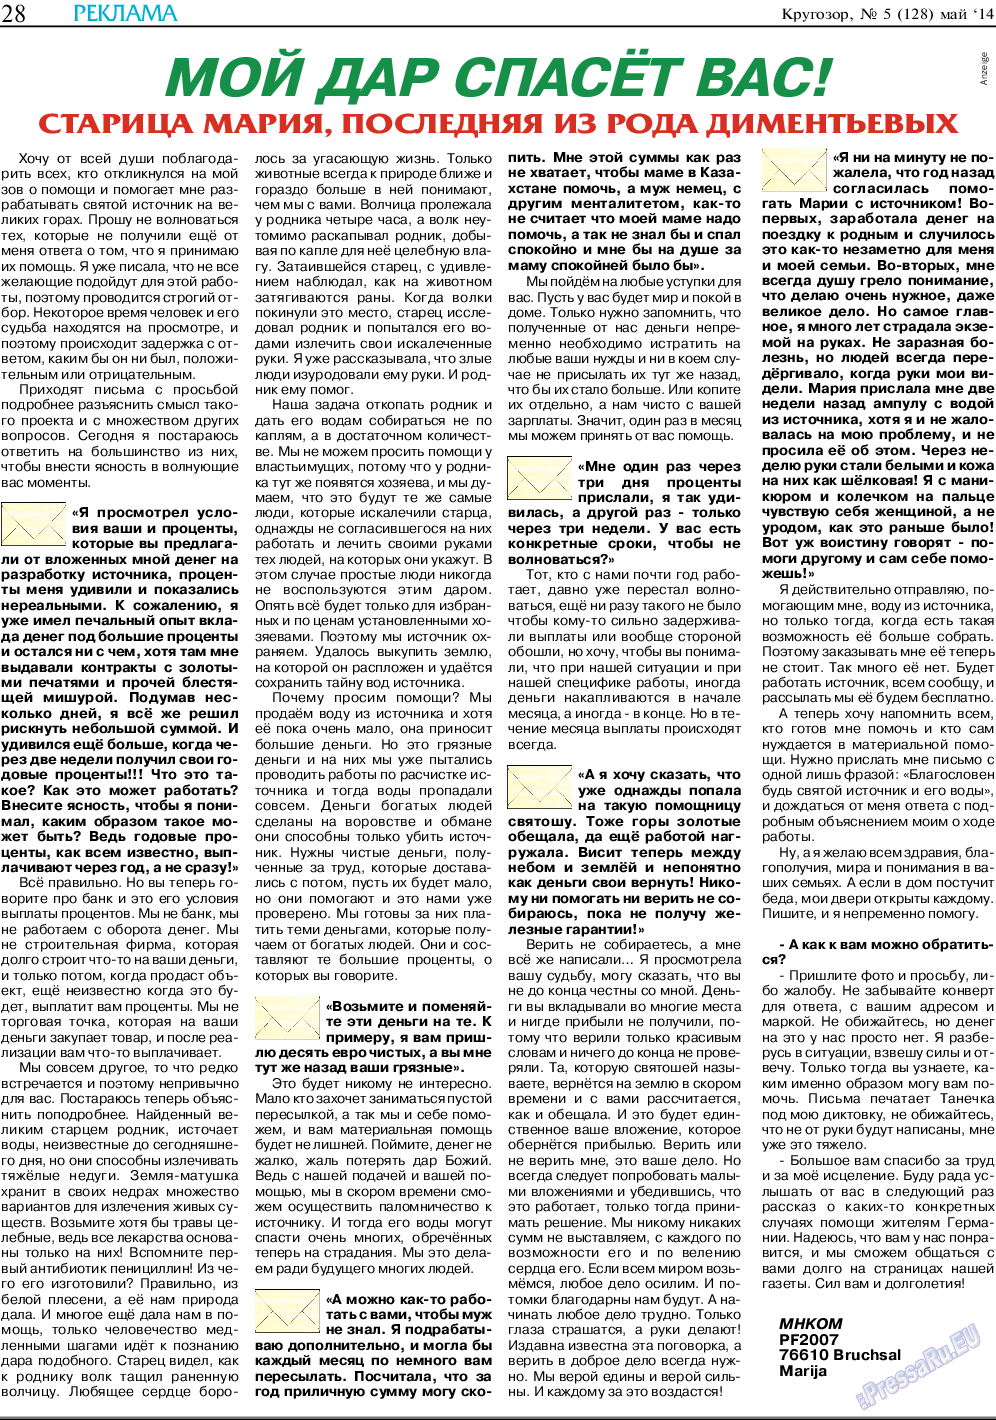 Кругозор, газета. 2014 №5 стр.28